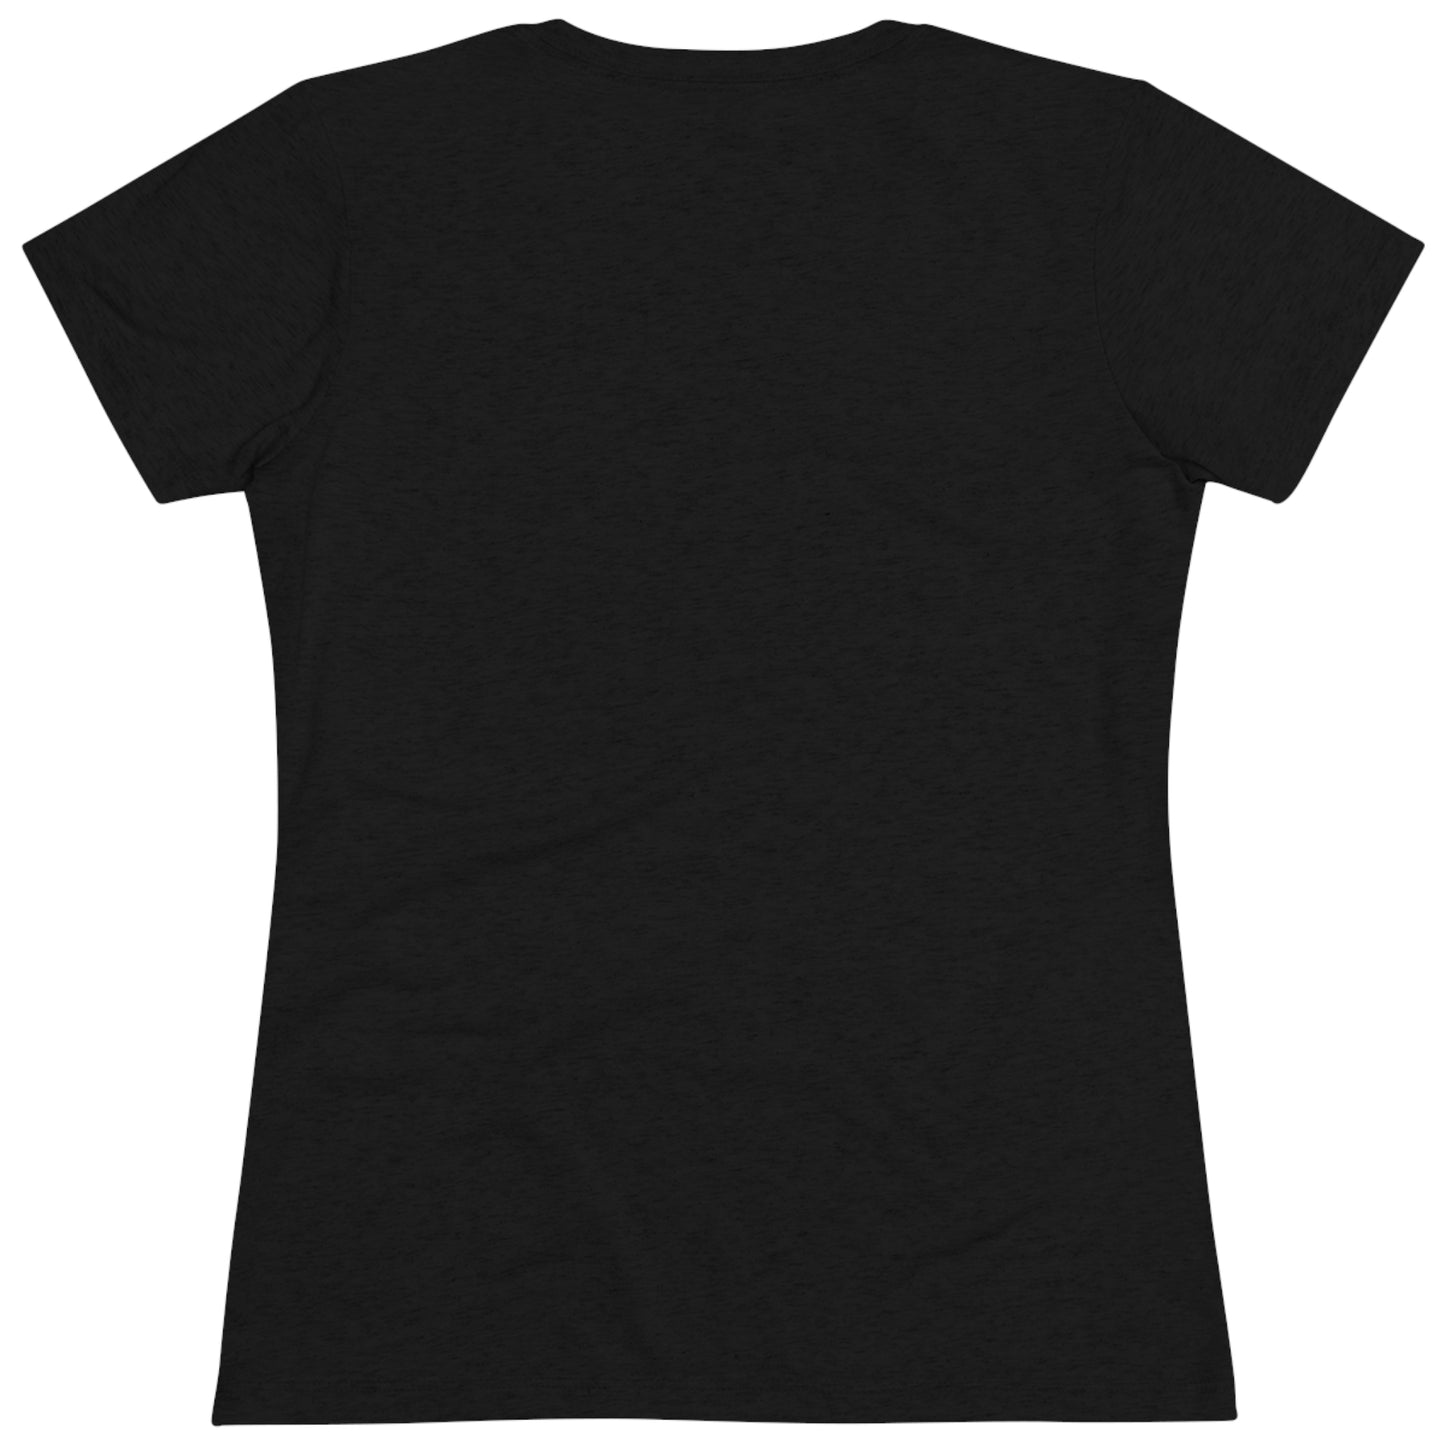 Women's "Dino T-shirt - Utah.com